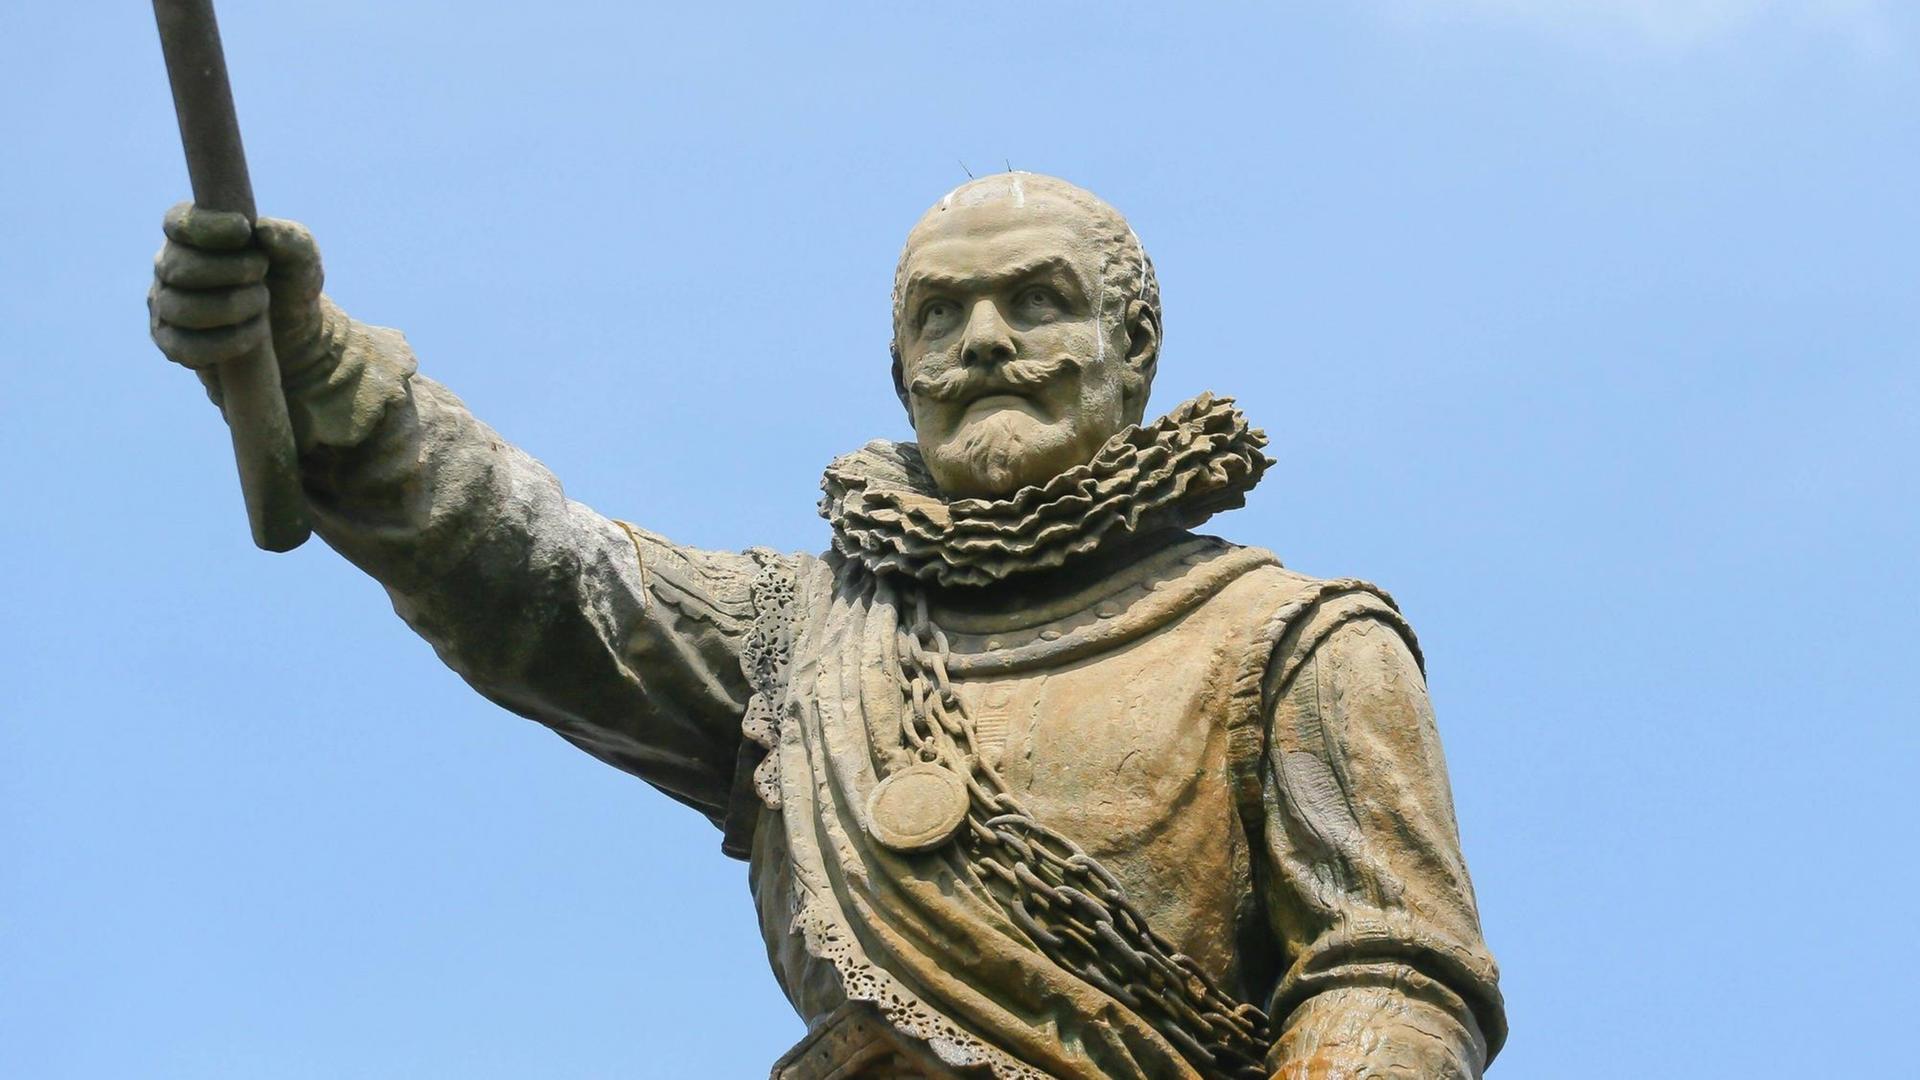 Ein Farbfoto zeigt die Statue eines frühneuzeitlich gekleideten Mannes, der einen starb in den blauen Himmel reckt